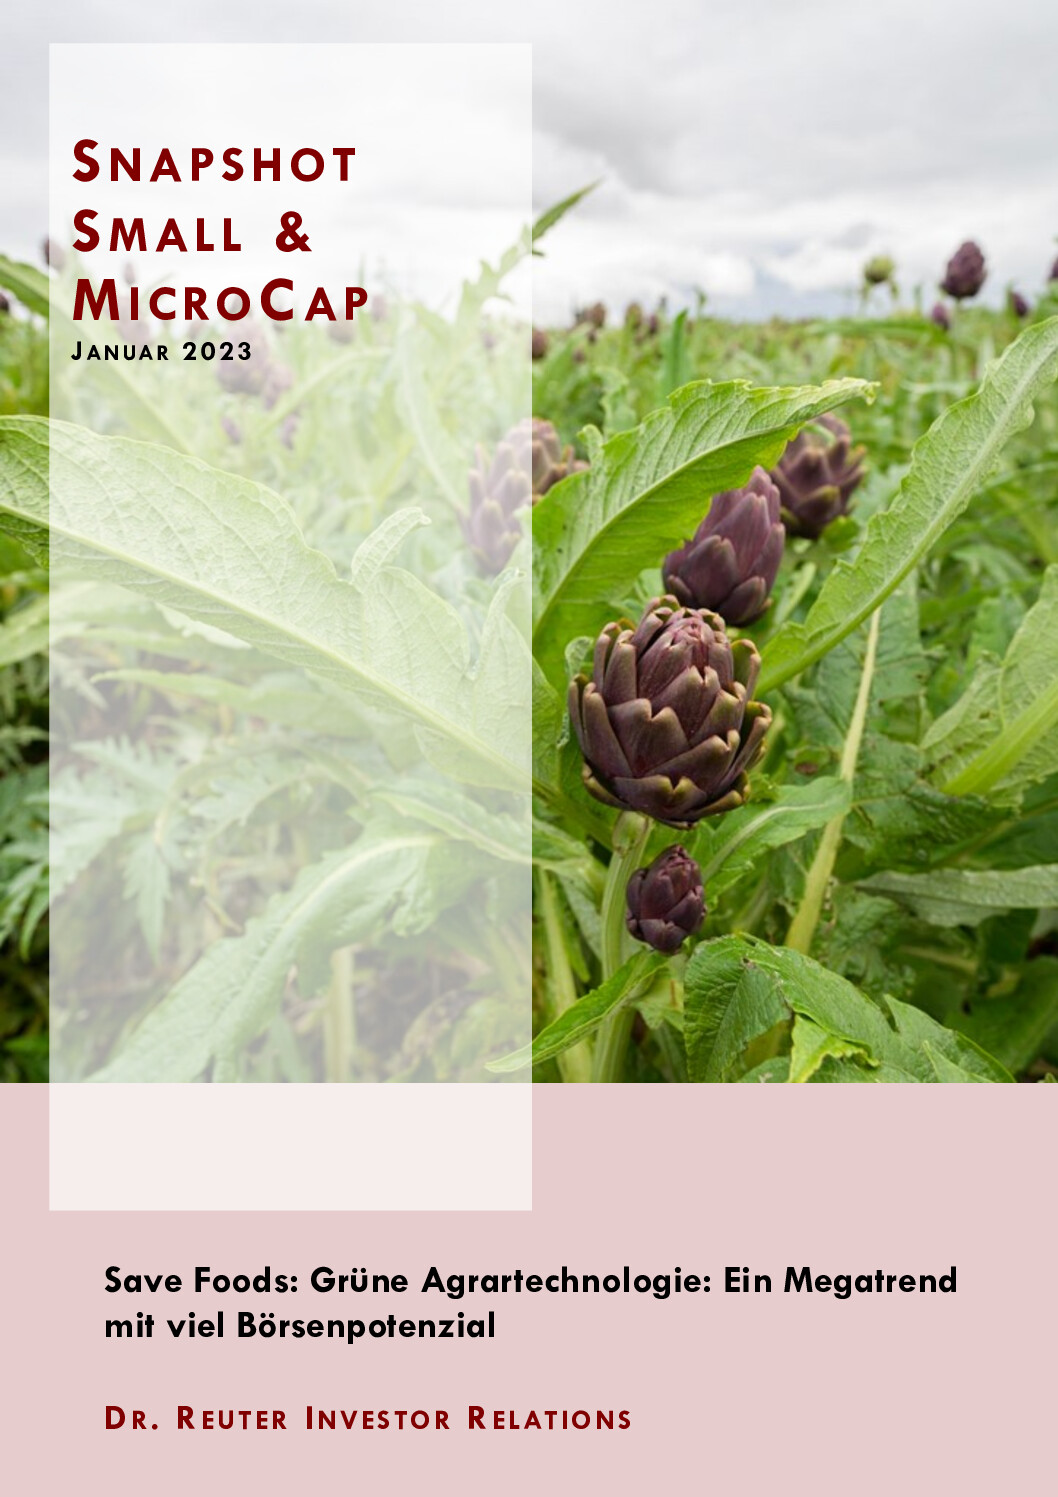 24.01.2023 Snapshot: Save Foods-Grüne Agrartechnologie: Ein Megatrend mit viel Börsenpotential